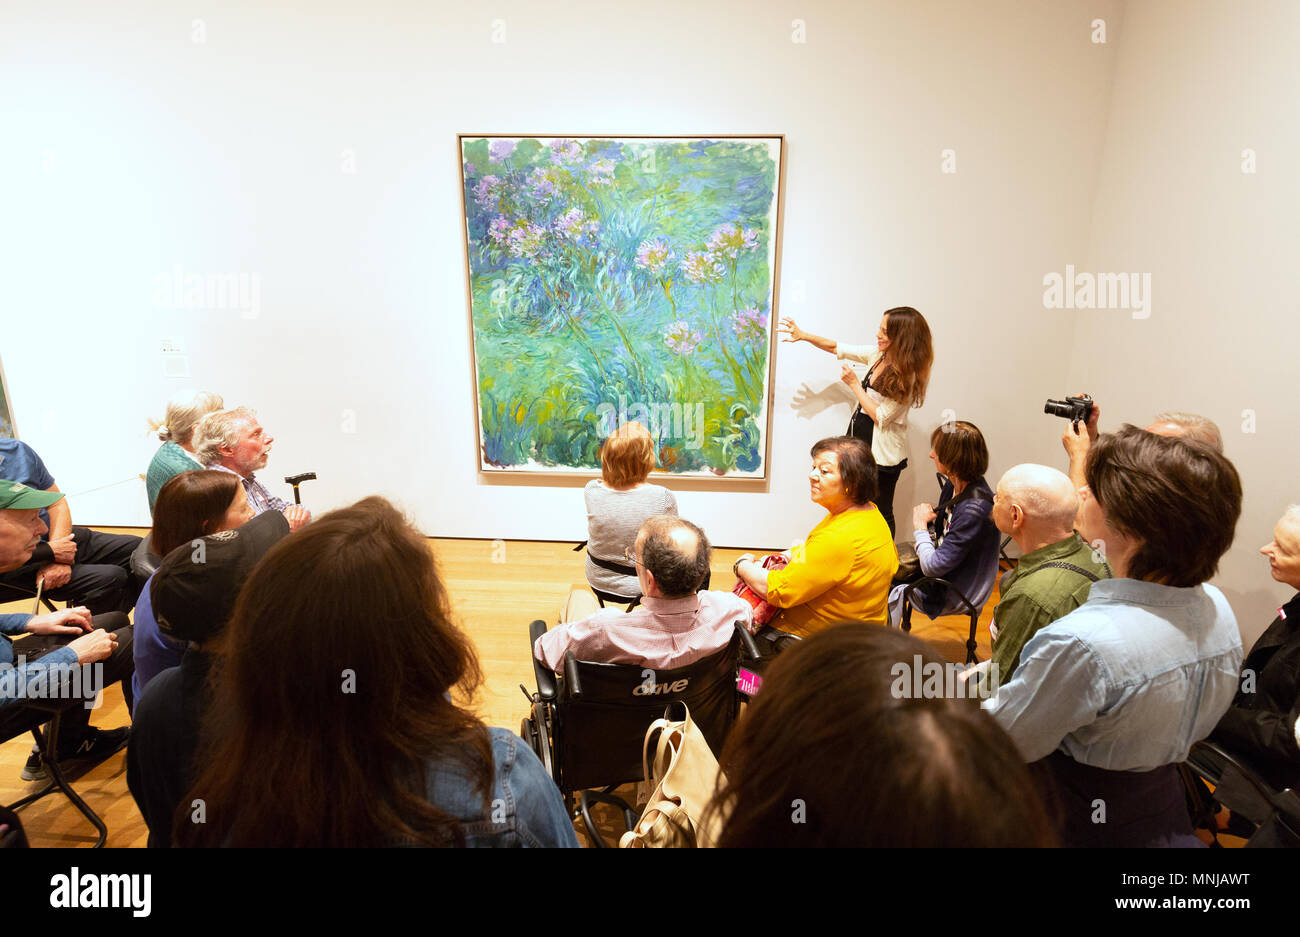 Les visiteurs à la recherche d'un tableau de Claude Monet, Agapanthus, Musée d'Art Moderne (MoMA), New York City USA Banque D'Images